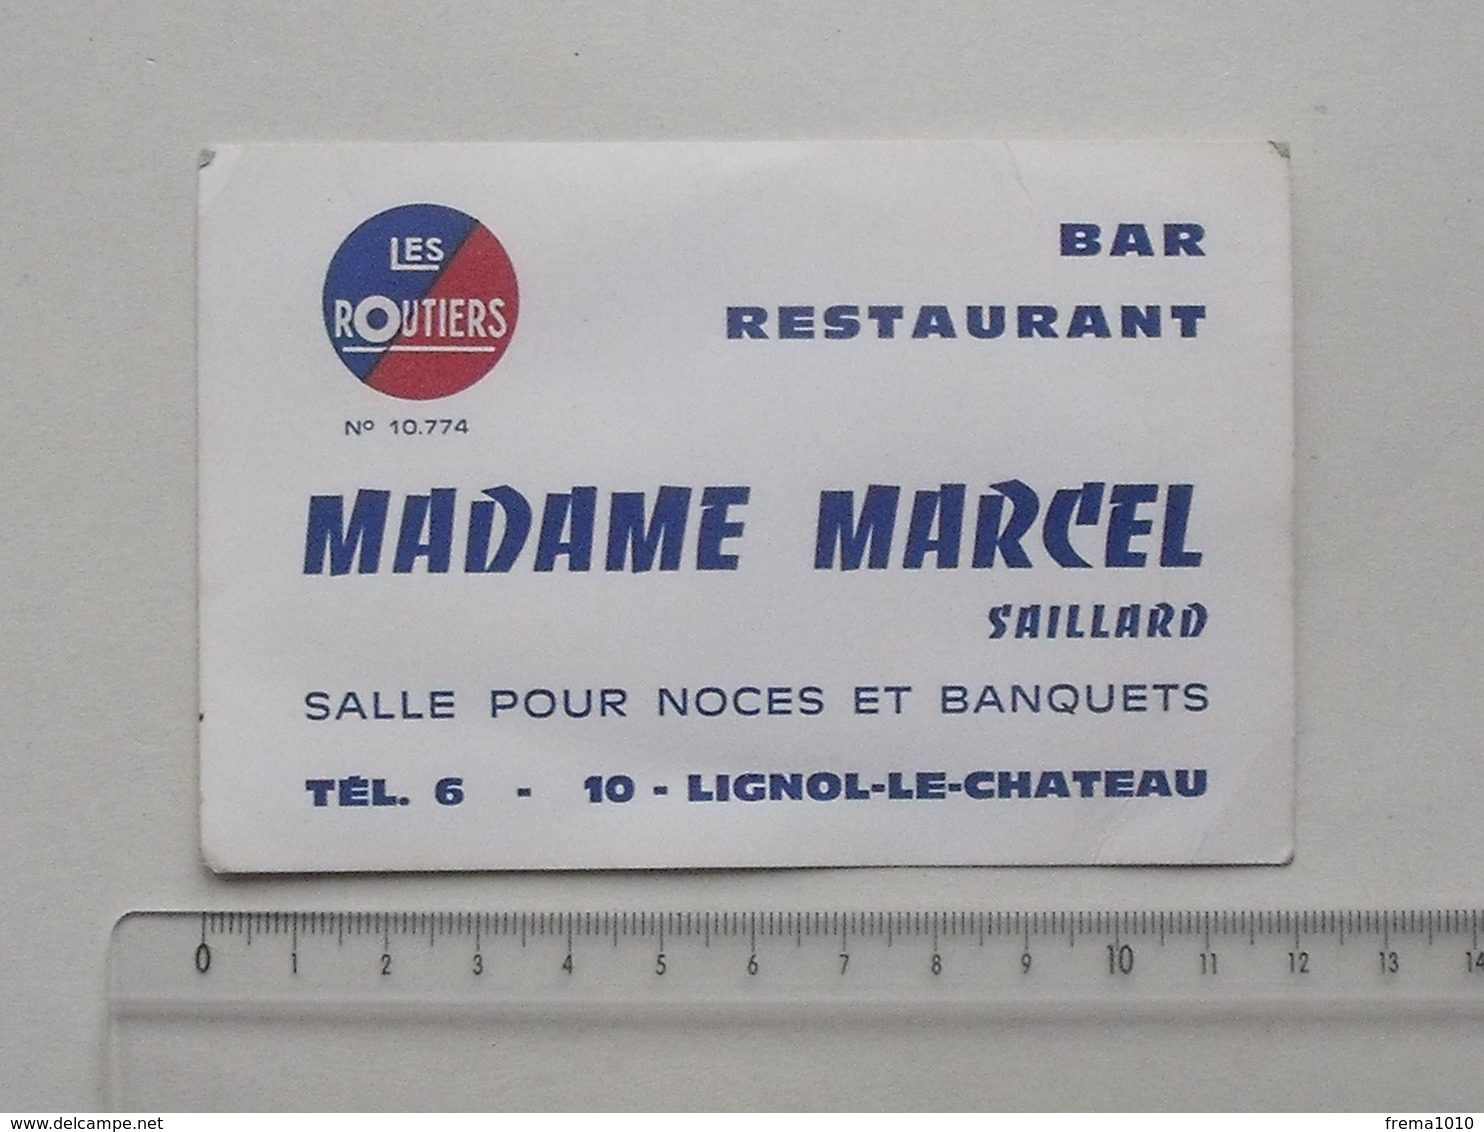 LIGNOL-LE-CHATEAU (10): Publicité Carte De Visite BAR RESTAURANT MADAME MARCEL (SAILLARD) - Les Routiers Noce Banquet... - Publicités